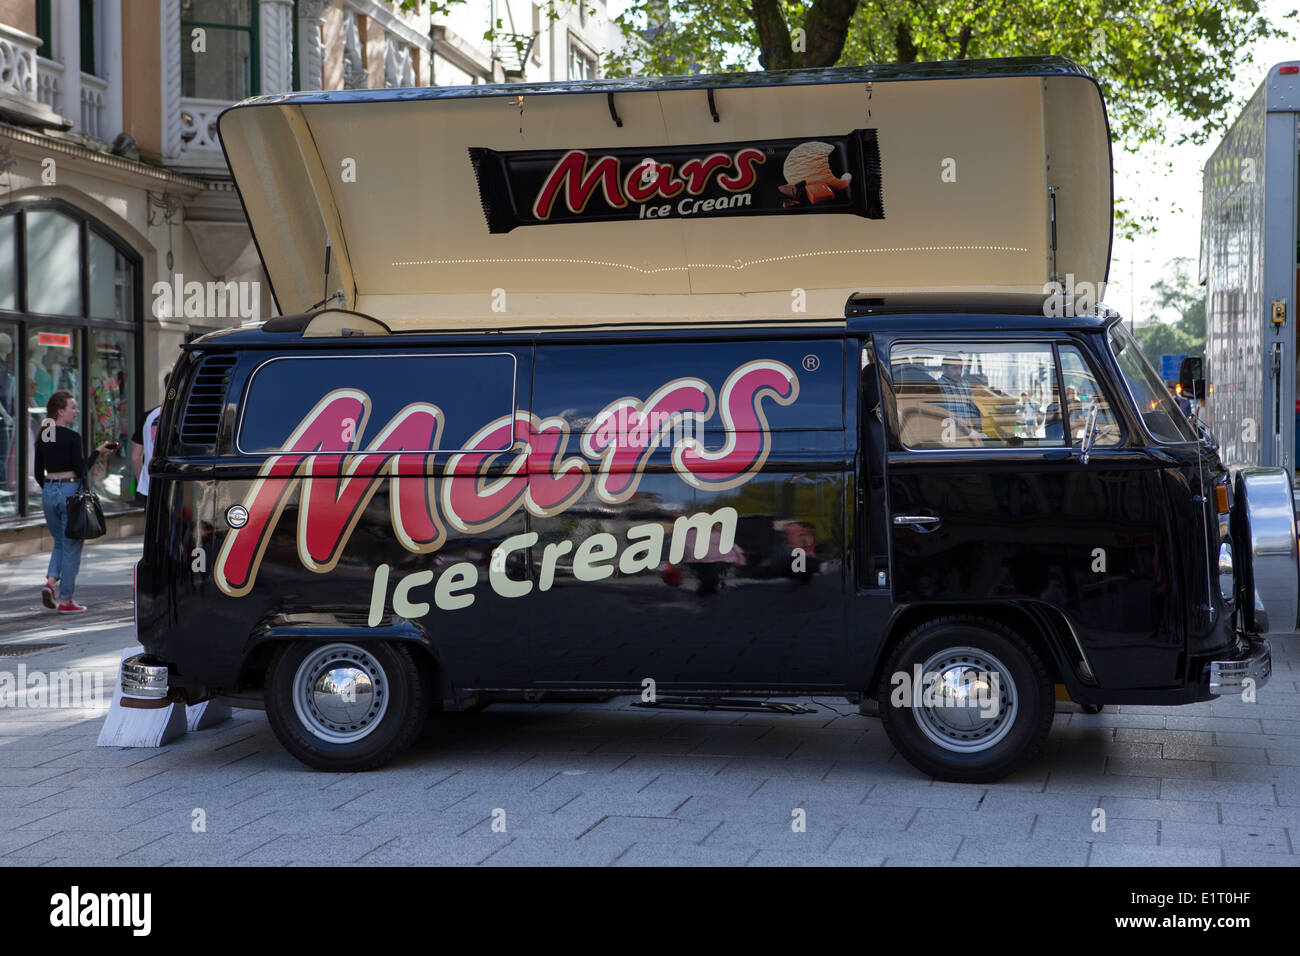 1976 70s Black Mars Ice Cream promotion VW Volkswagen Business véhicule de type camping dans le centre ville de Cardiff, pays de Galles, Royaume-Uni Banque D'Images